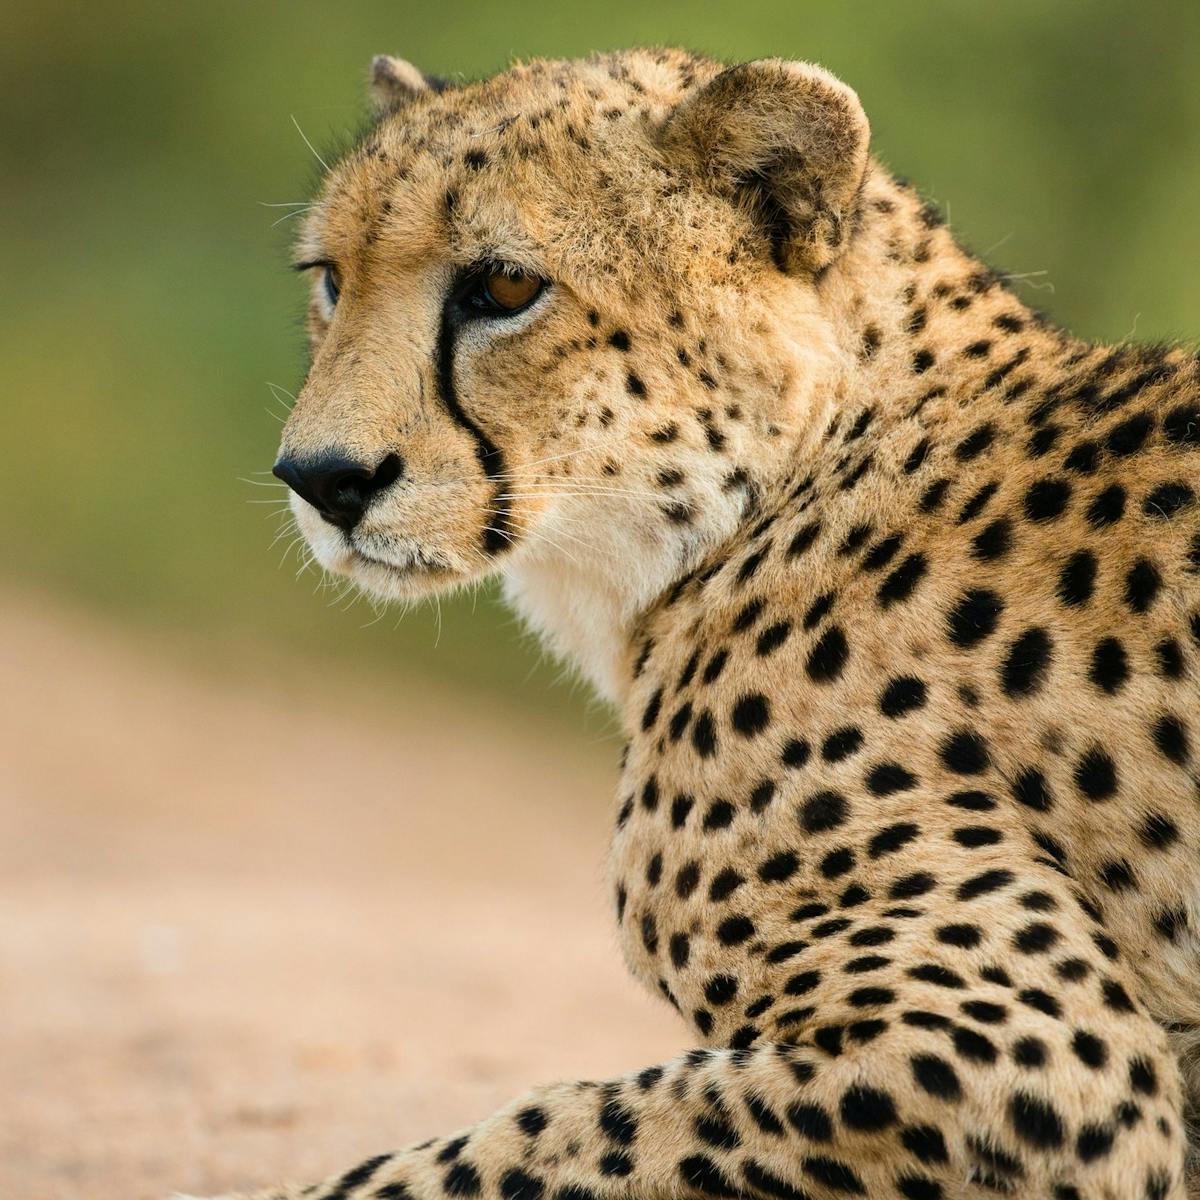 a cheetah sitting in a field